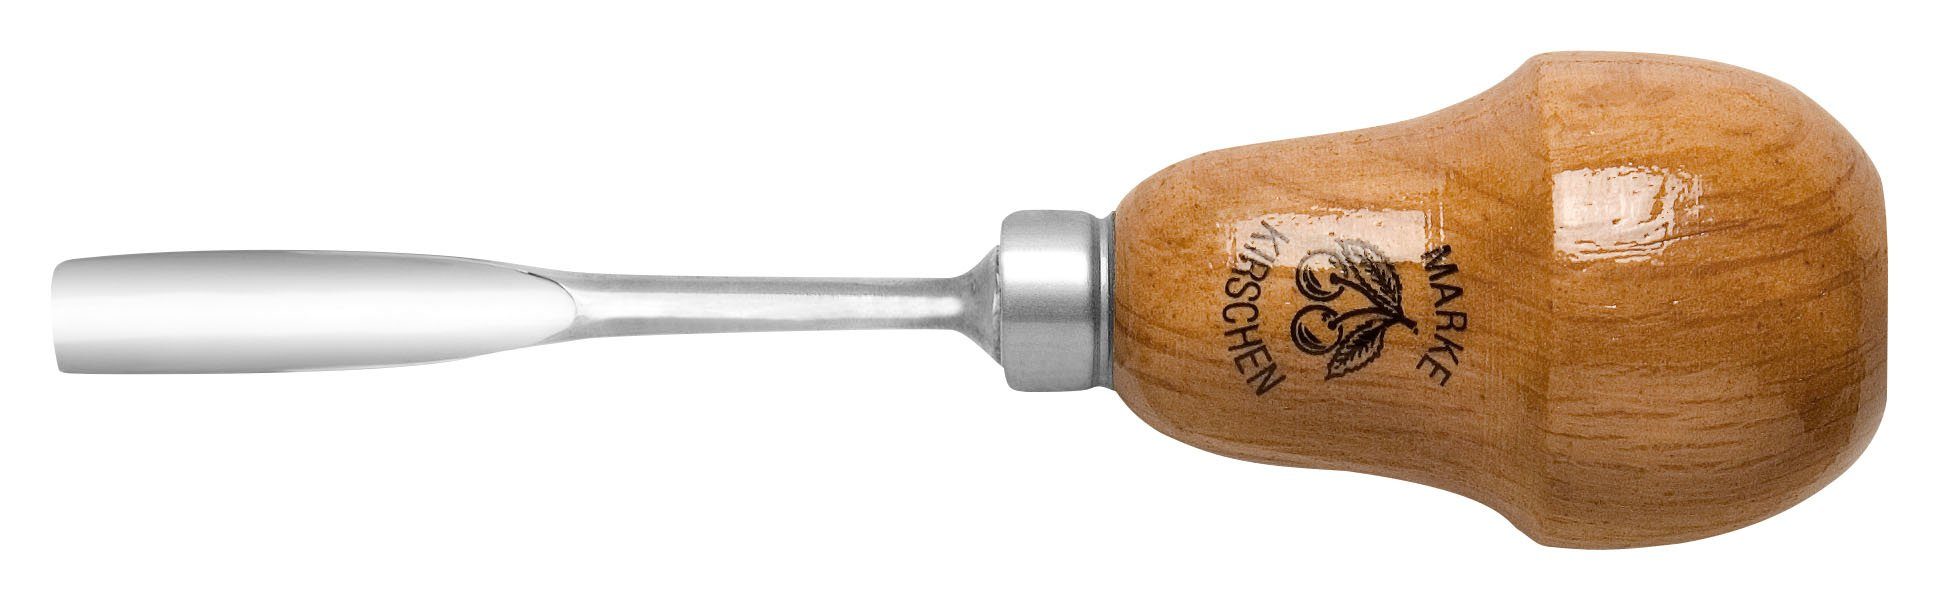 Kirschen Stechbeitel - Kerbschnitzbeitel 2mm & Stich 10, KIRSCHEN gekröpft mit tiefer Birnenheft Höhlung